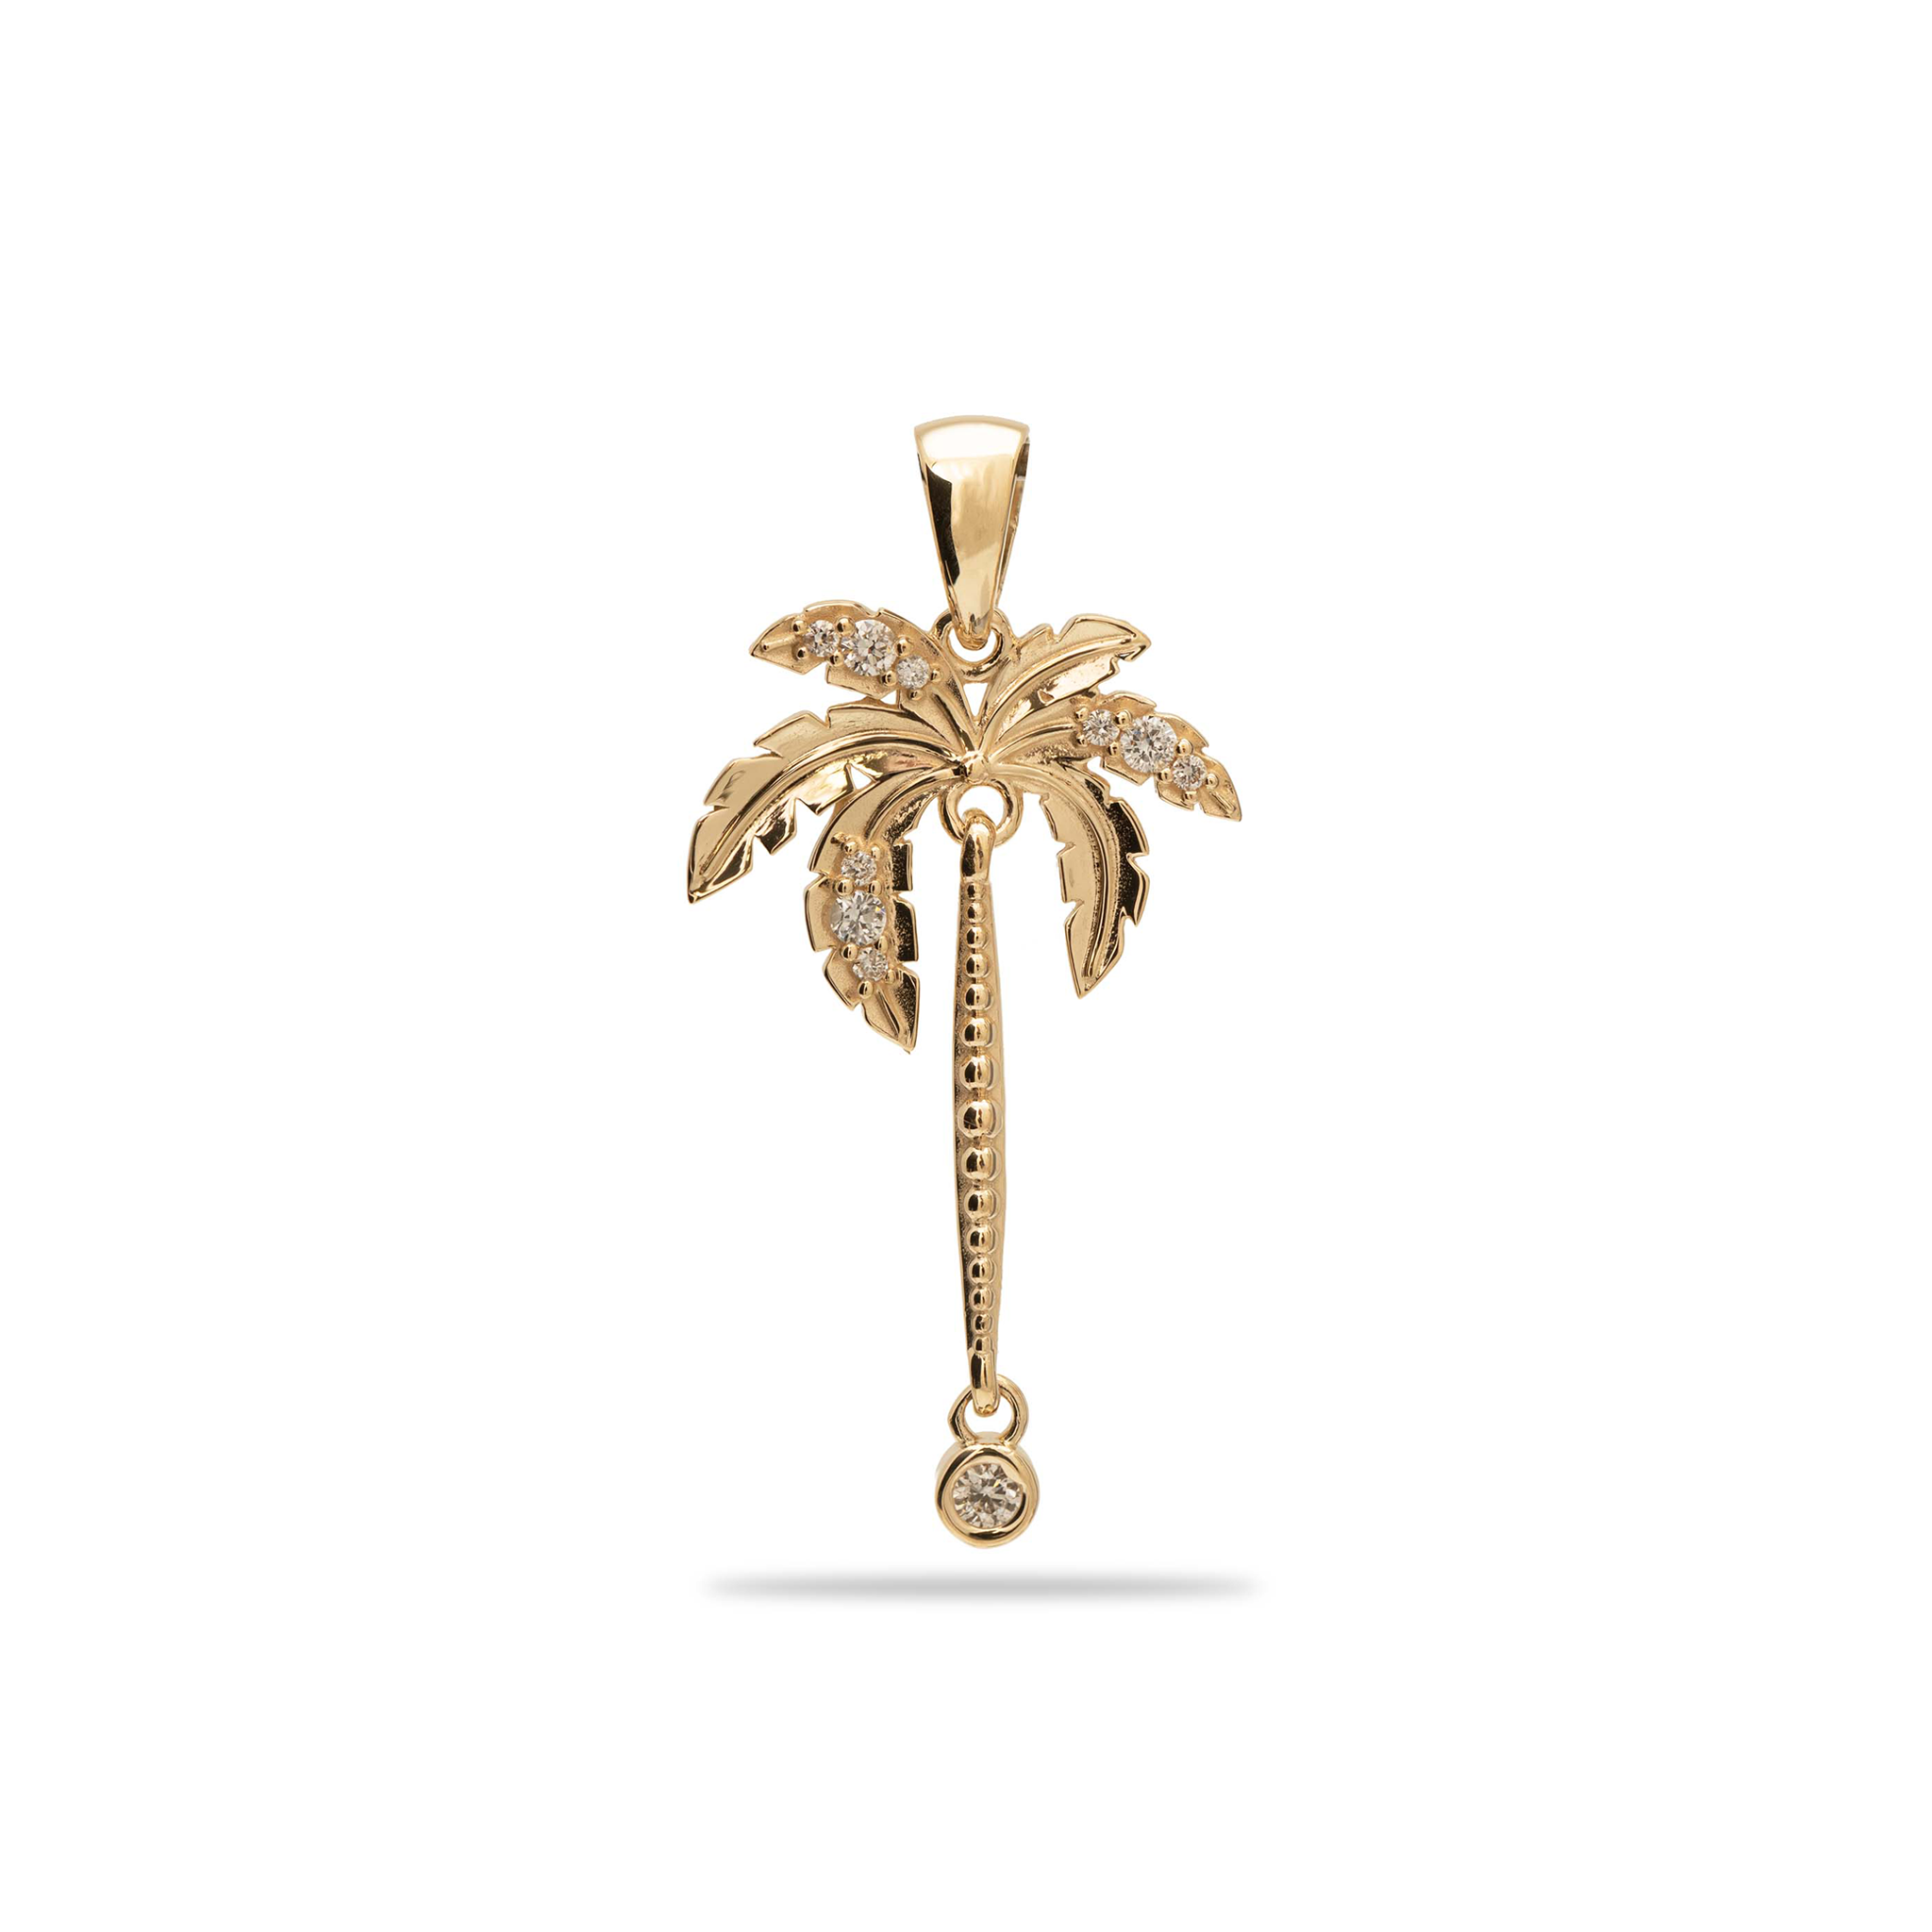 Paradis Palms - Palm Tree Pendant en or avec des diamants - 28 mm